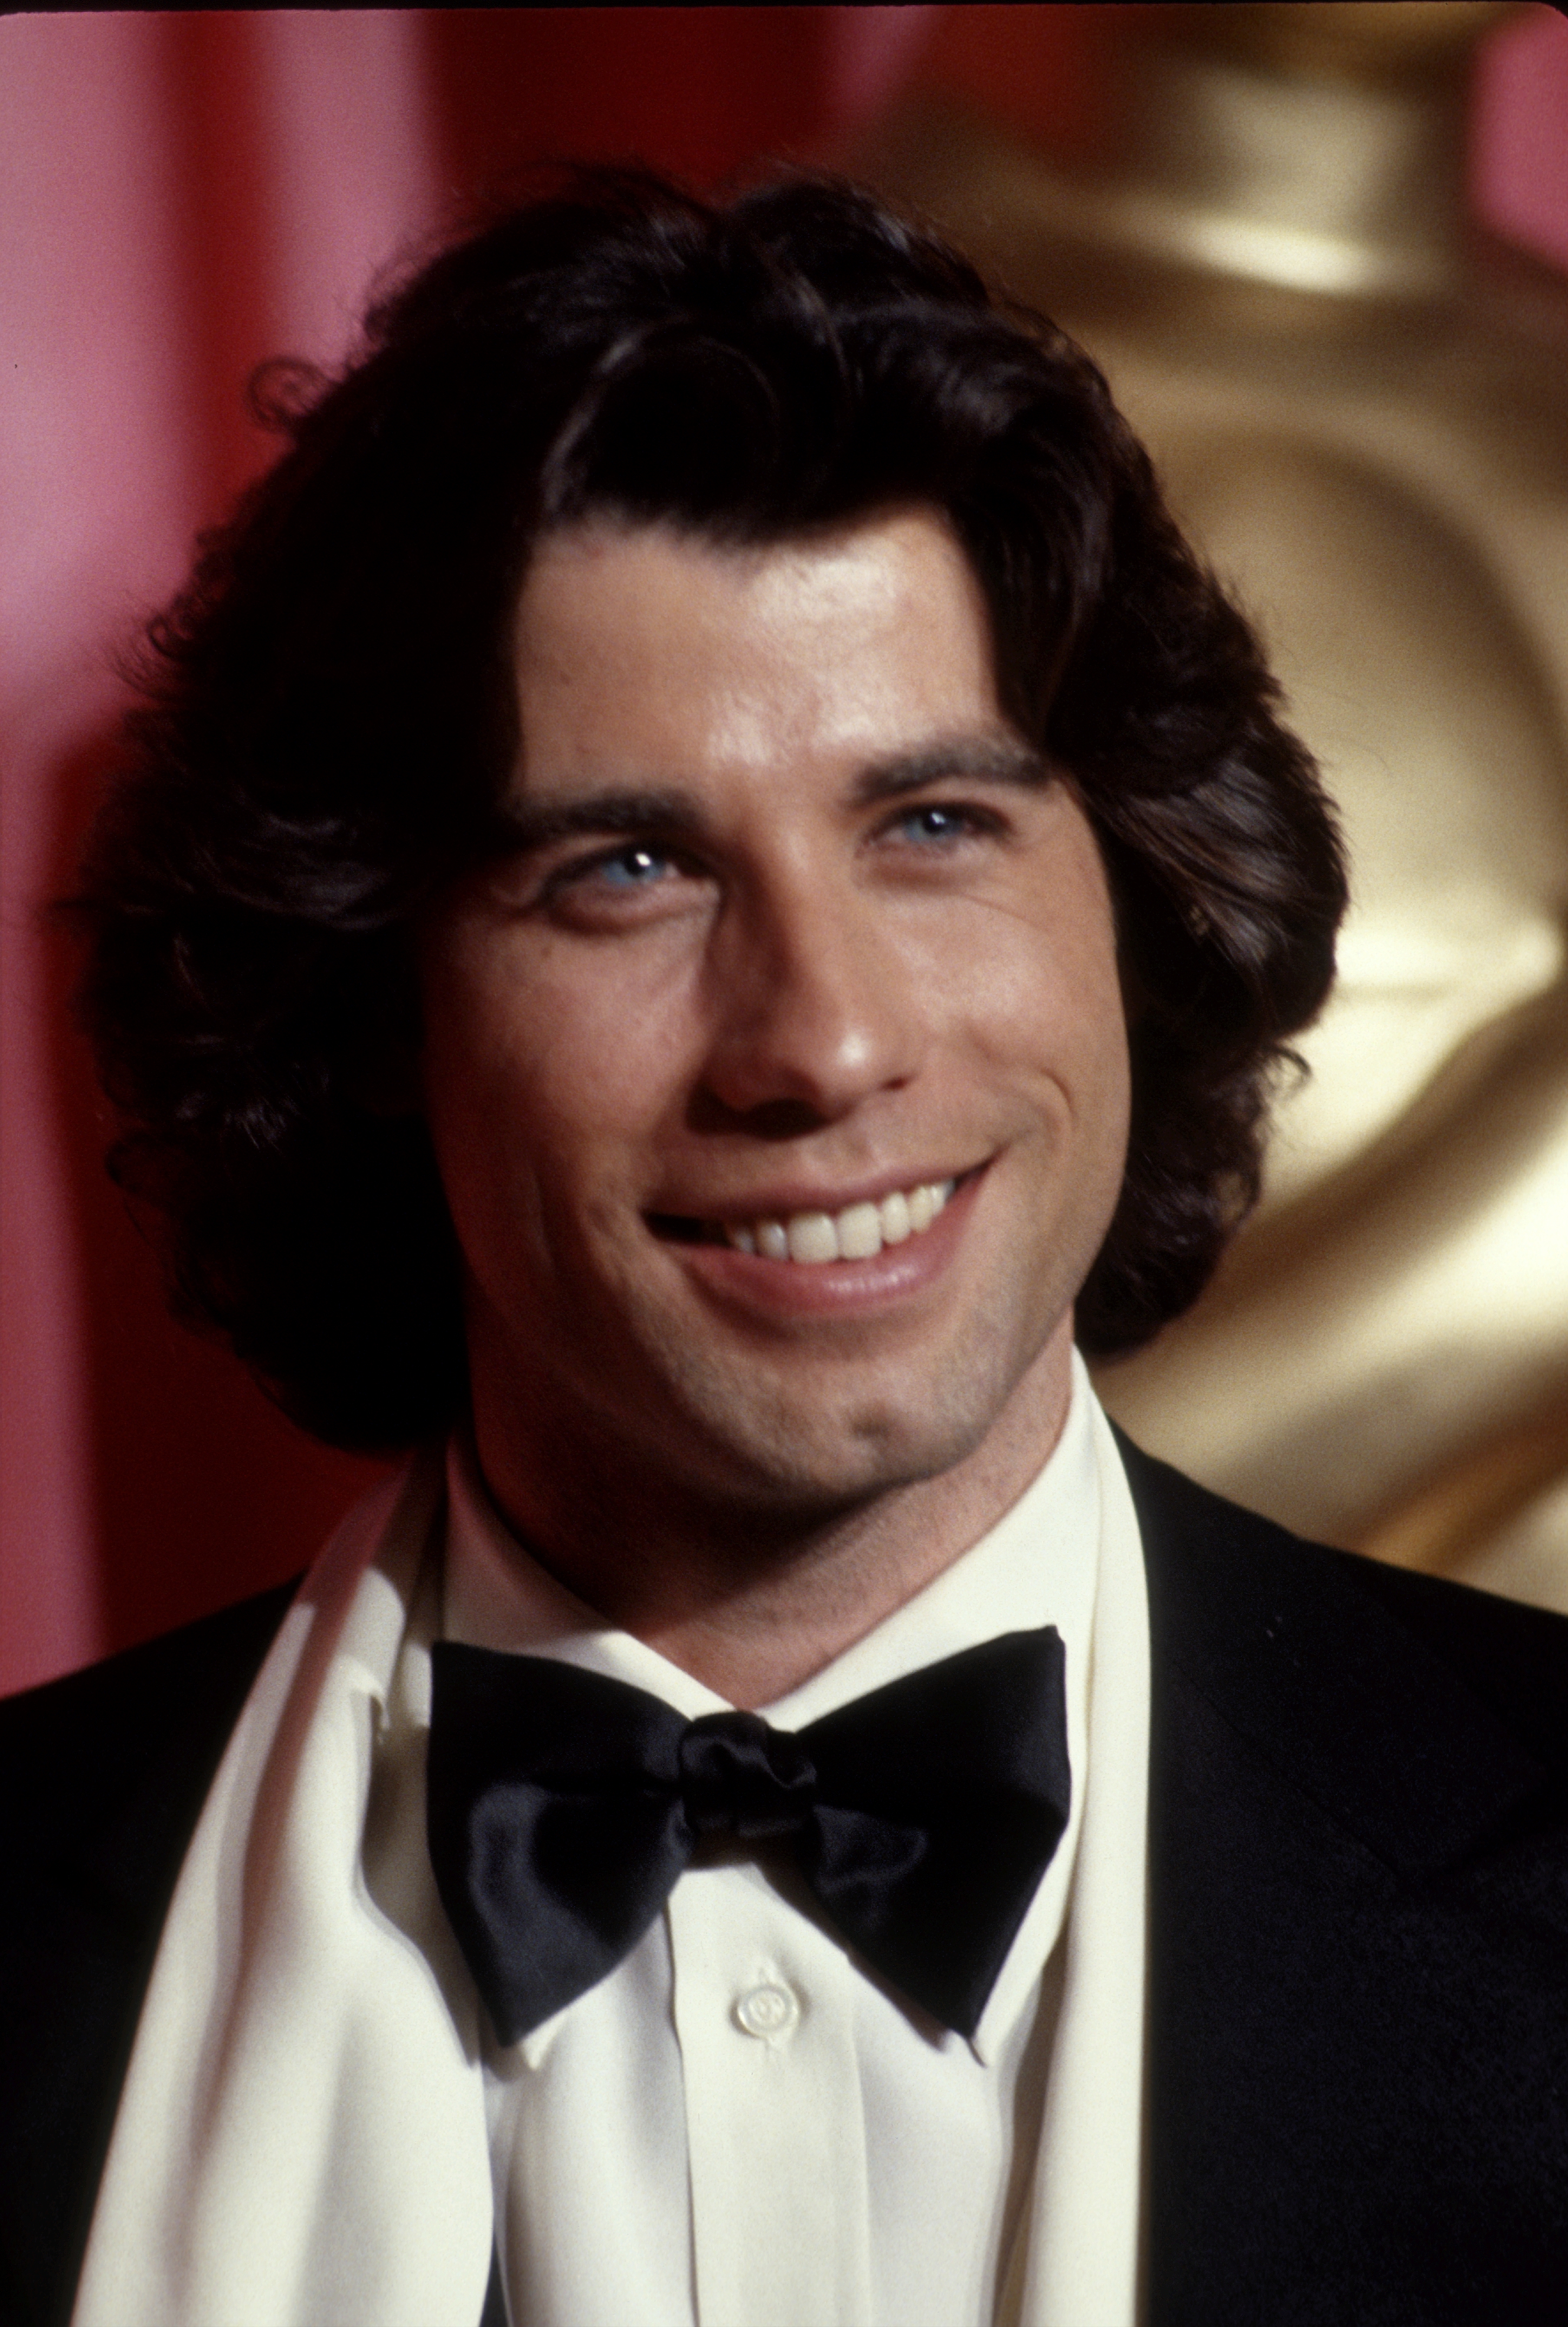 John Travolta à la cérémonie des Oscars en 1978 à Los Angeles. | Source : Getty Images